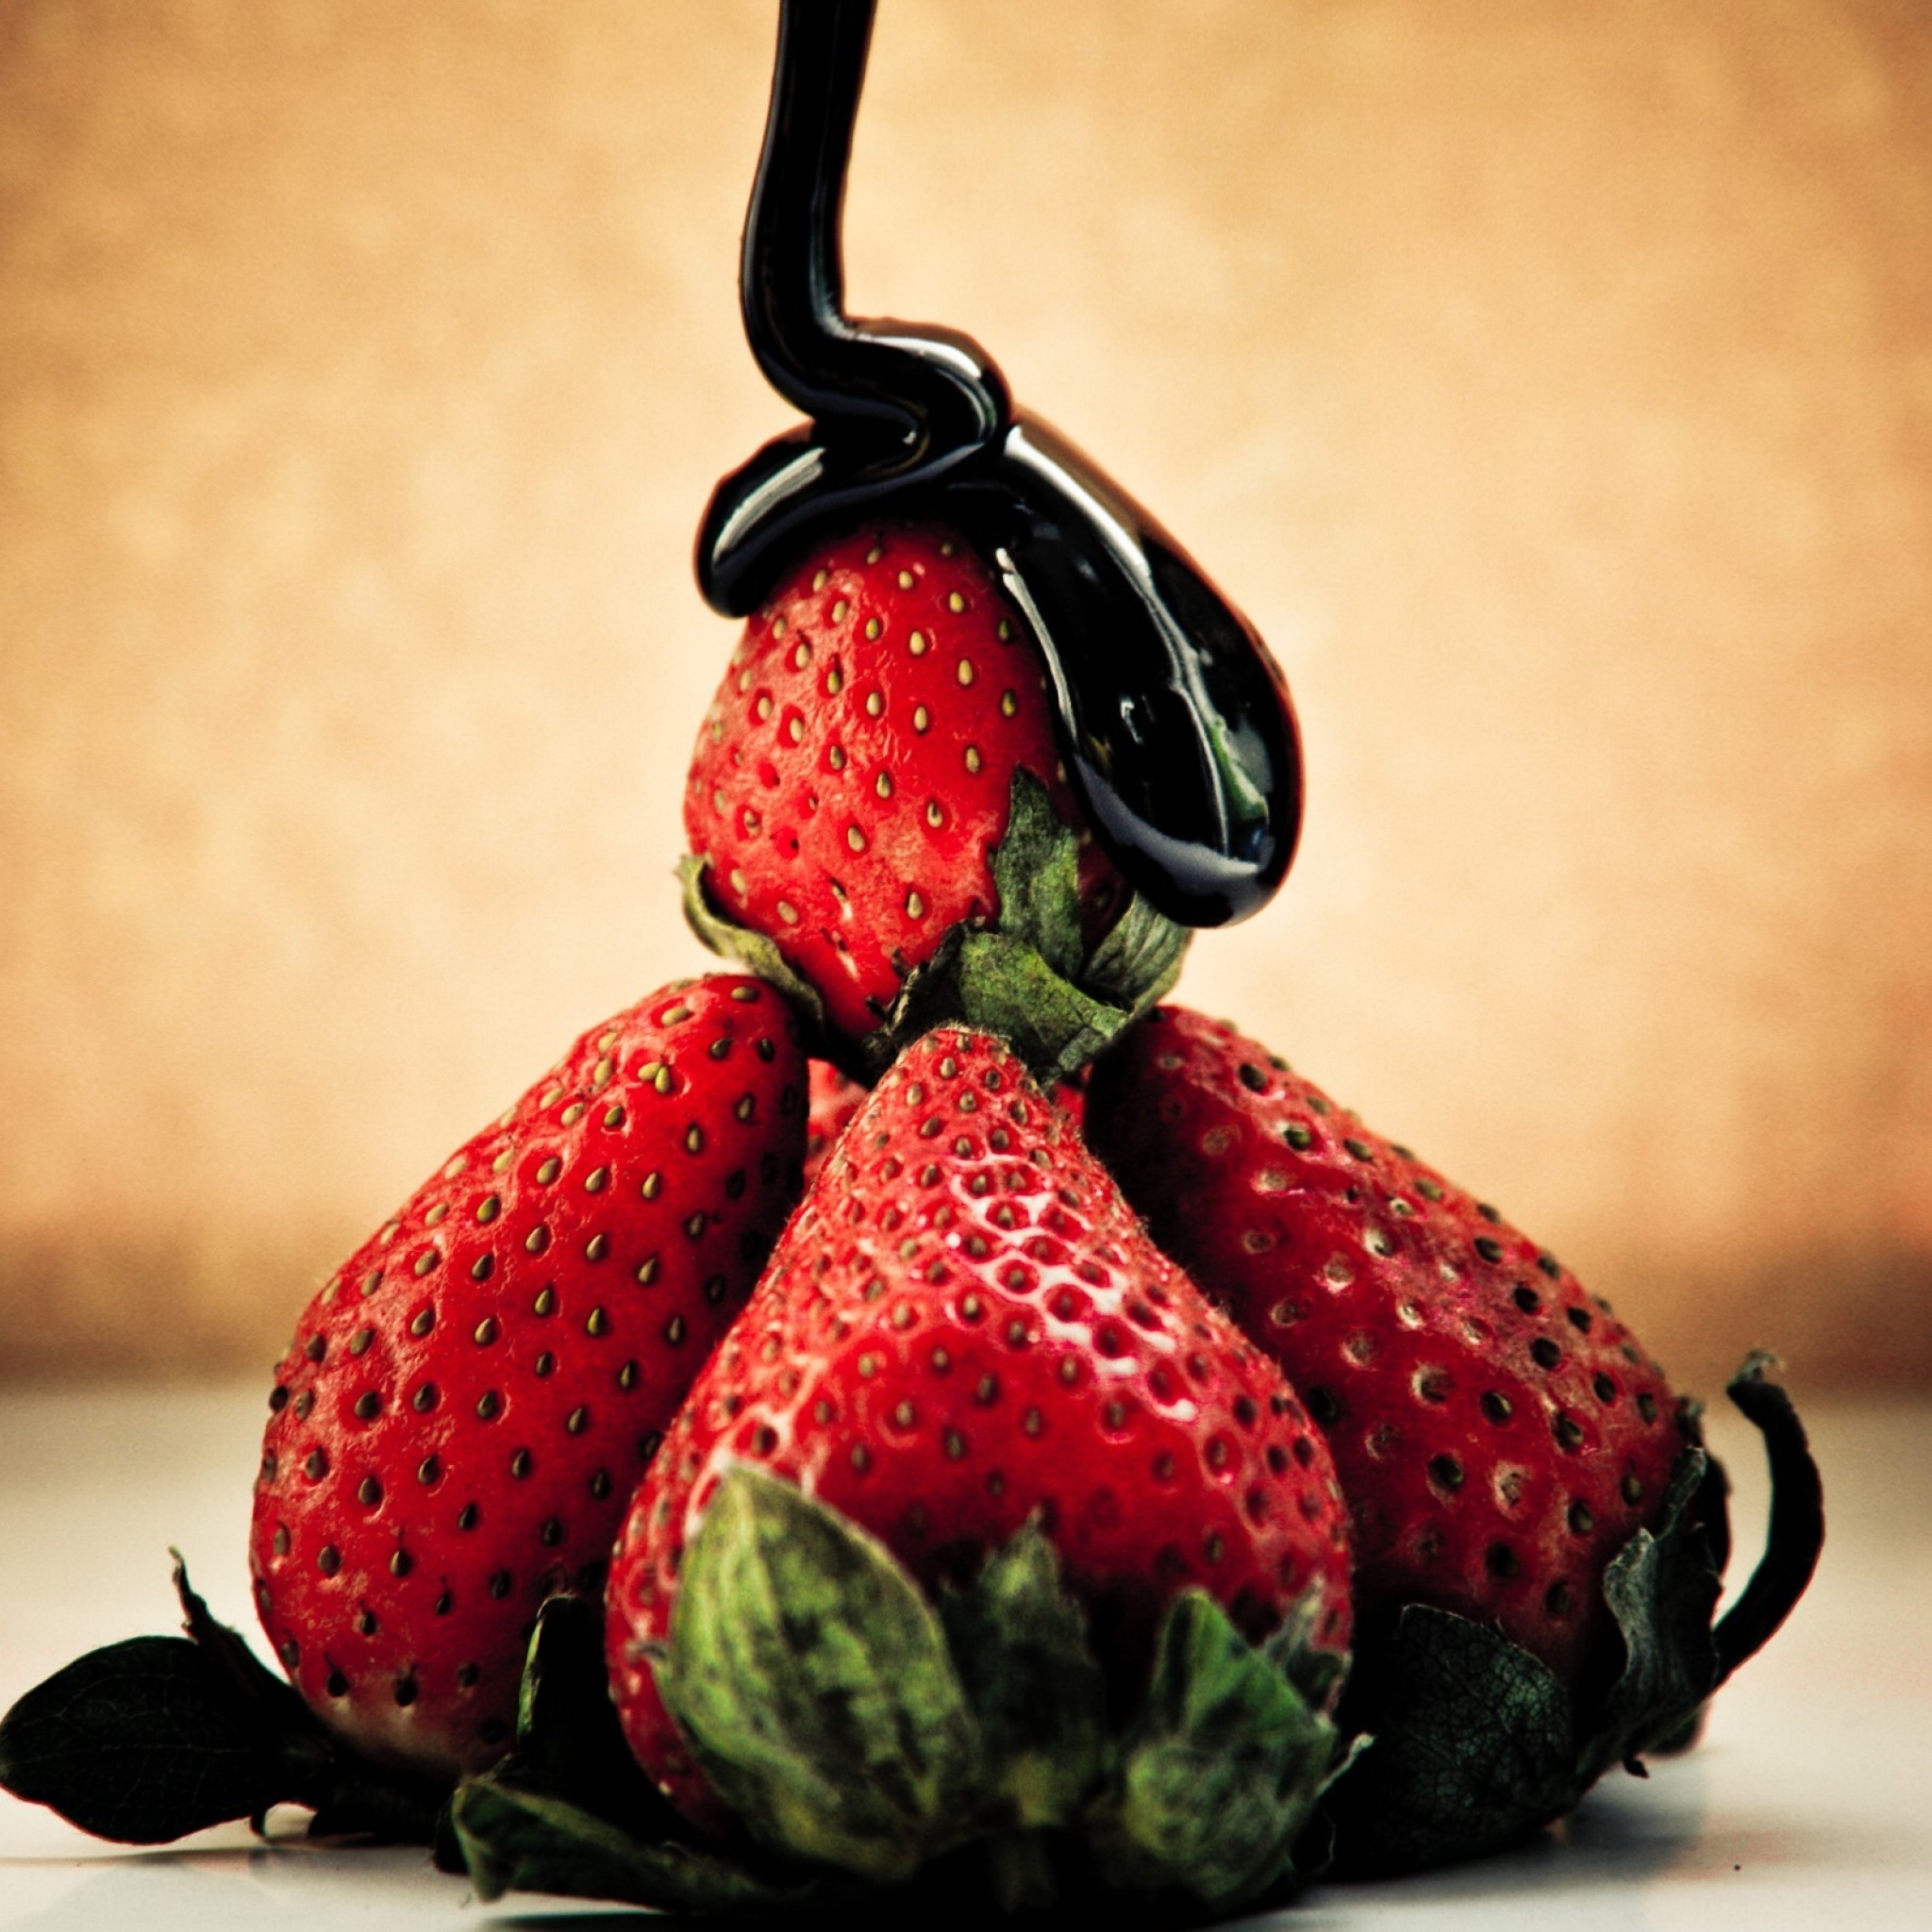 Strawberries with chocolate screenshot #1 2048x2048